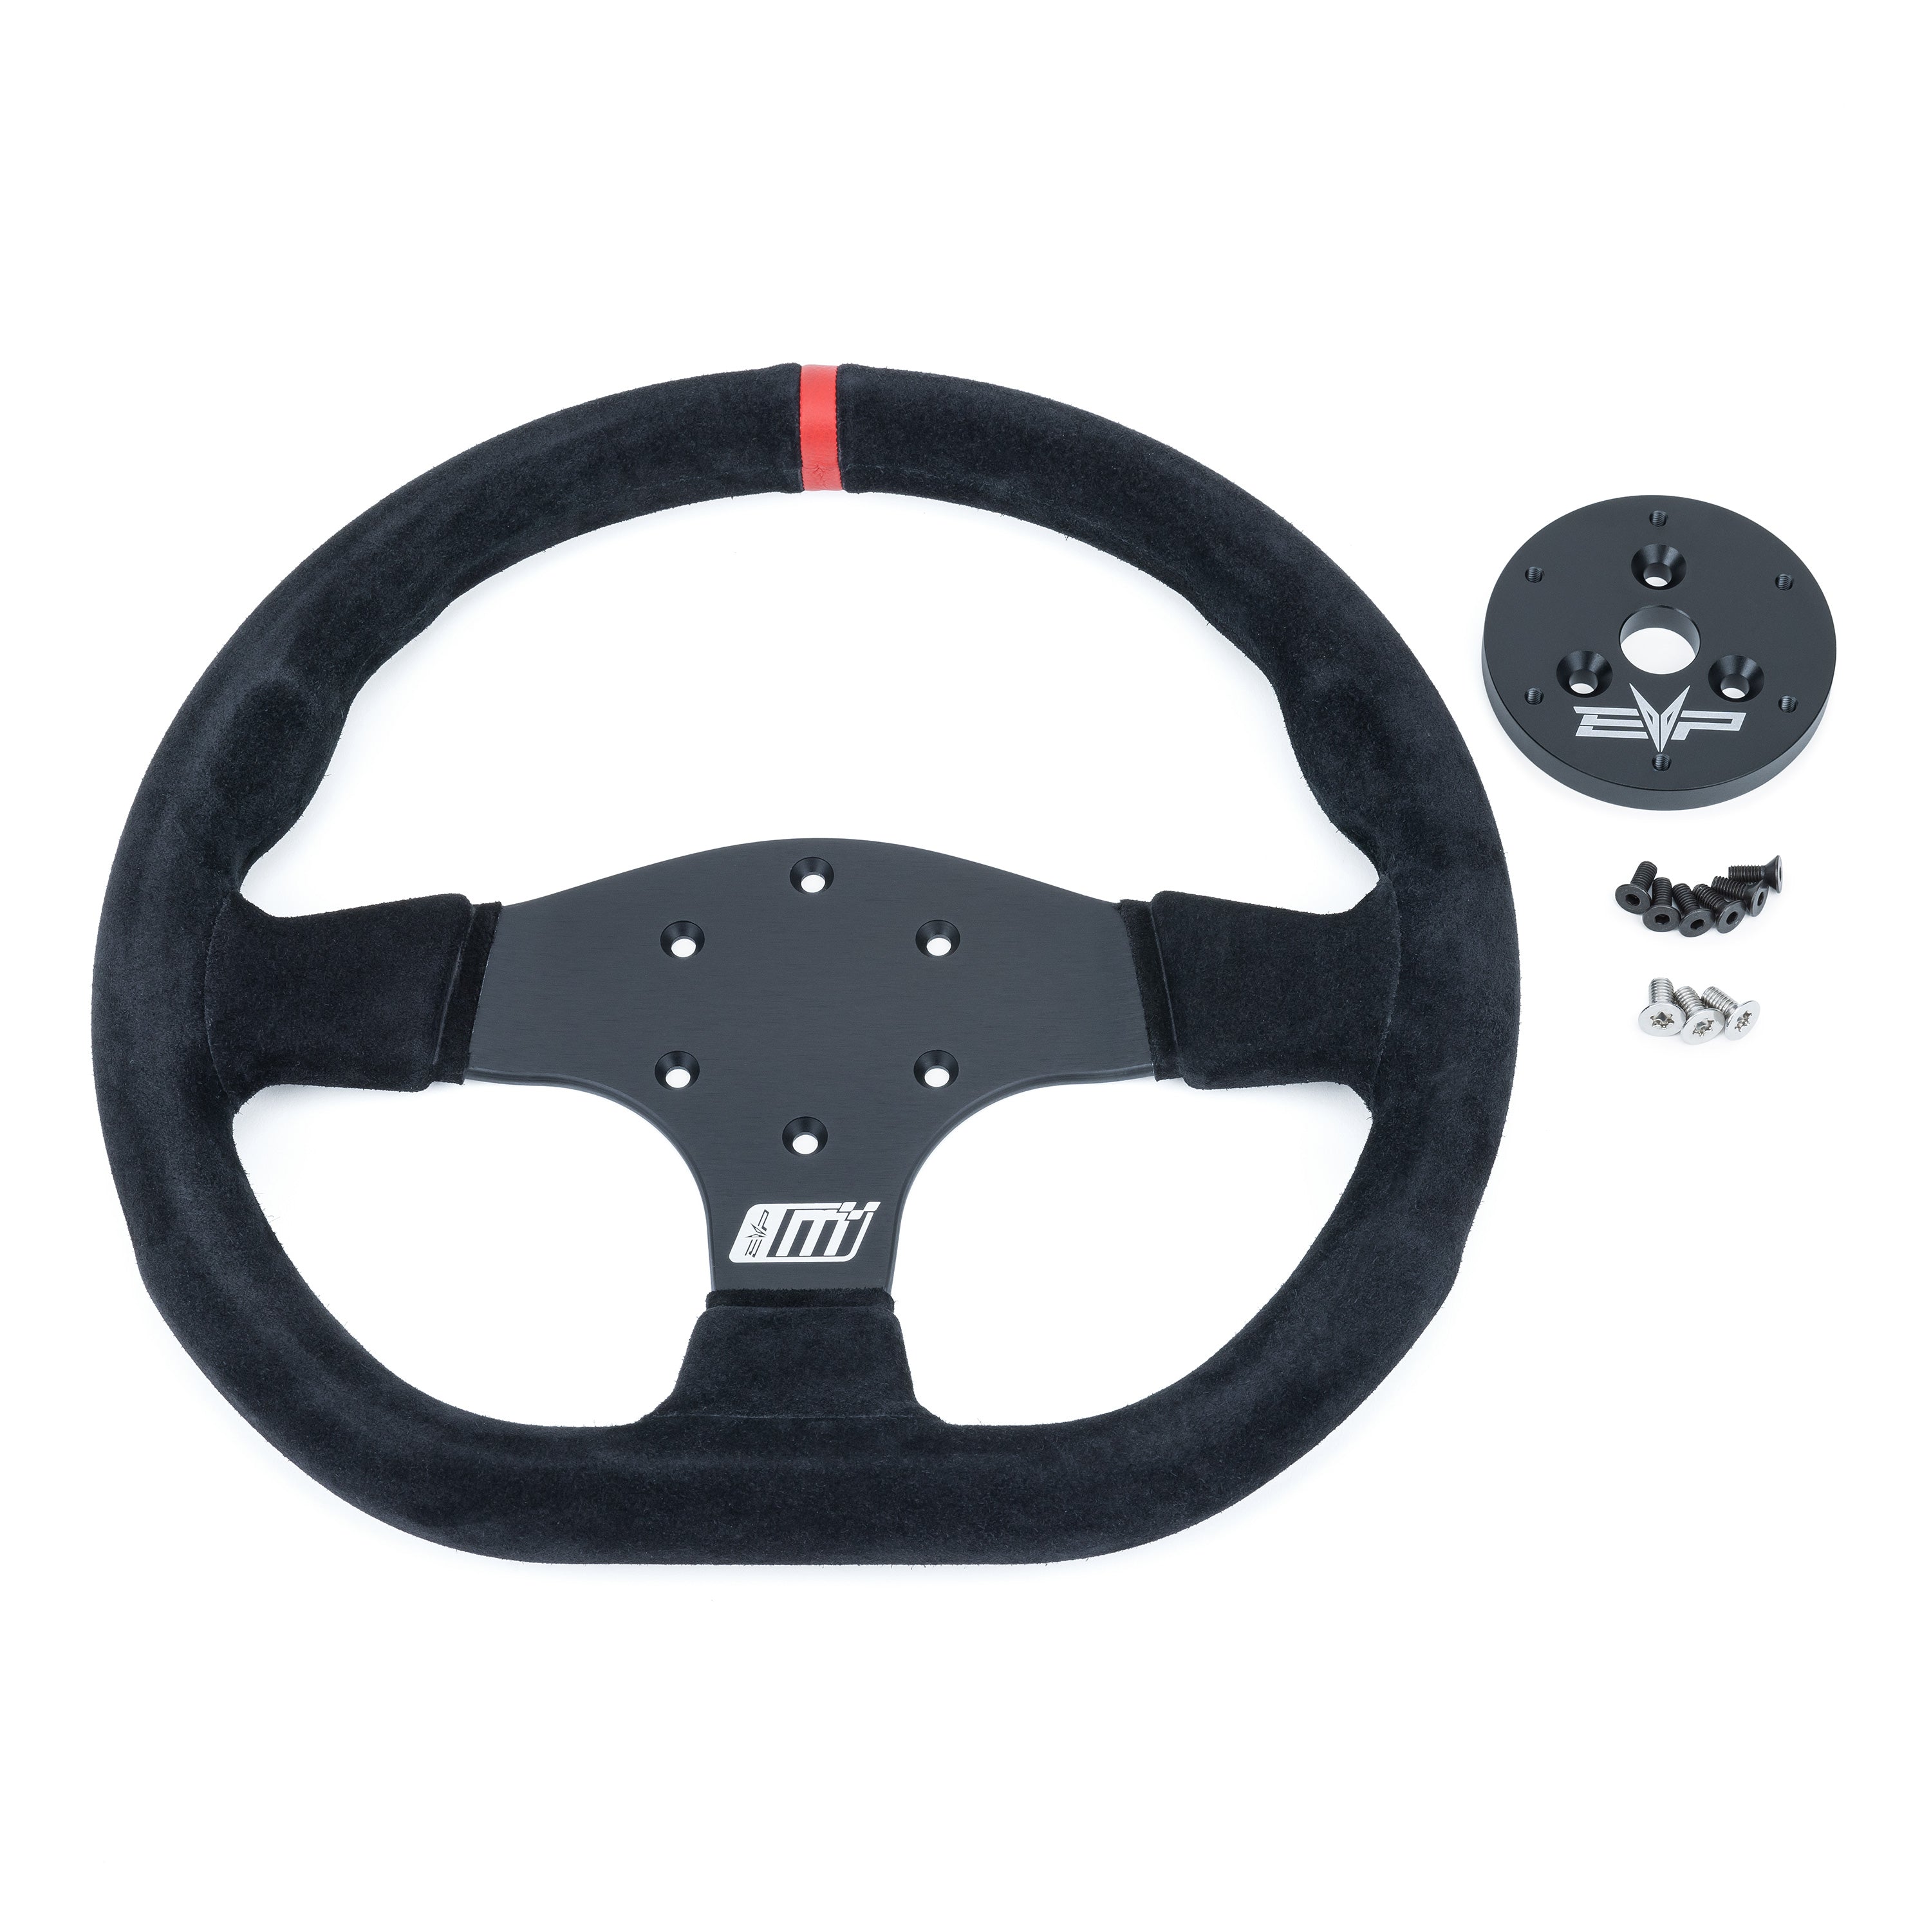 EVP.MOde Steering Wheel for Polaris RZR 200